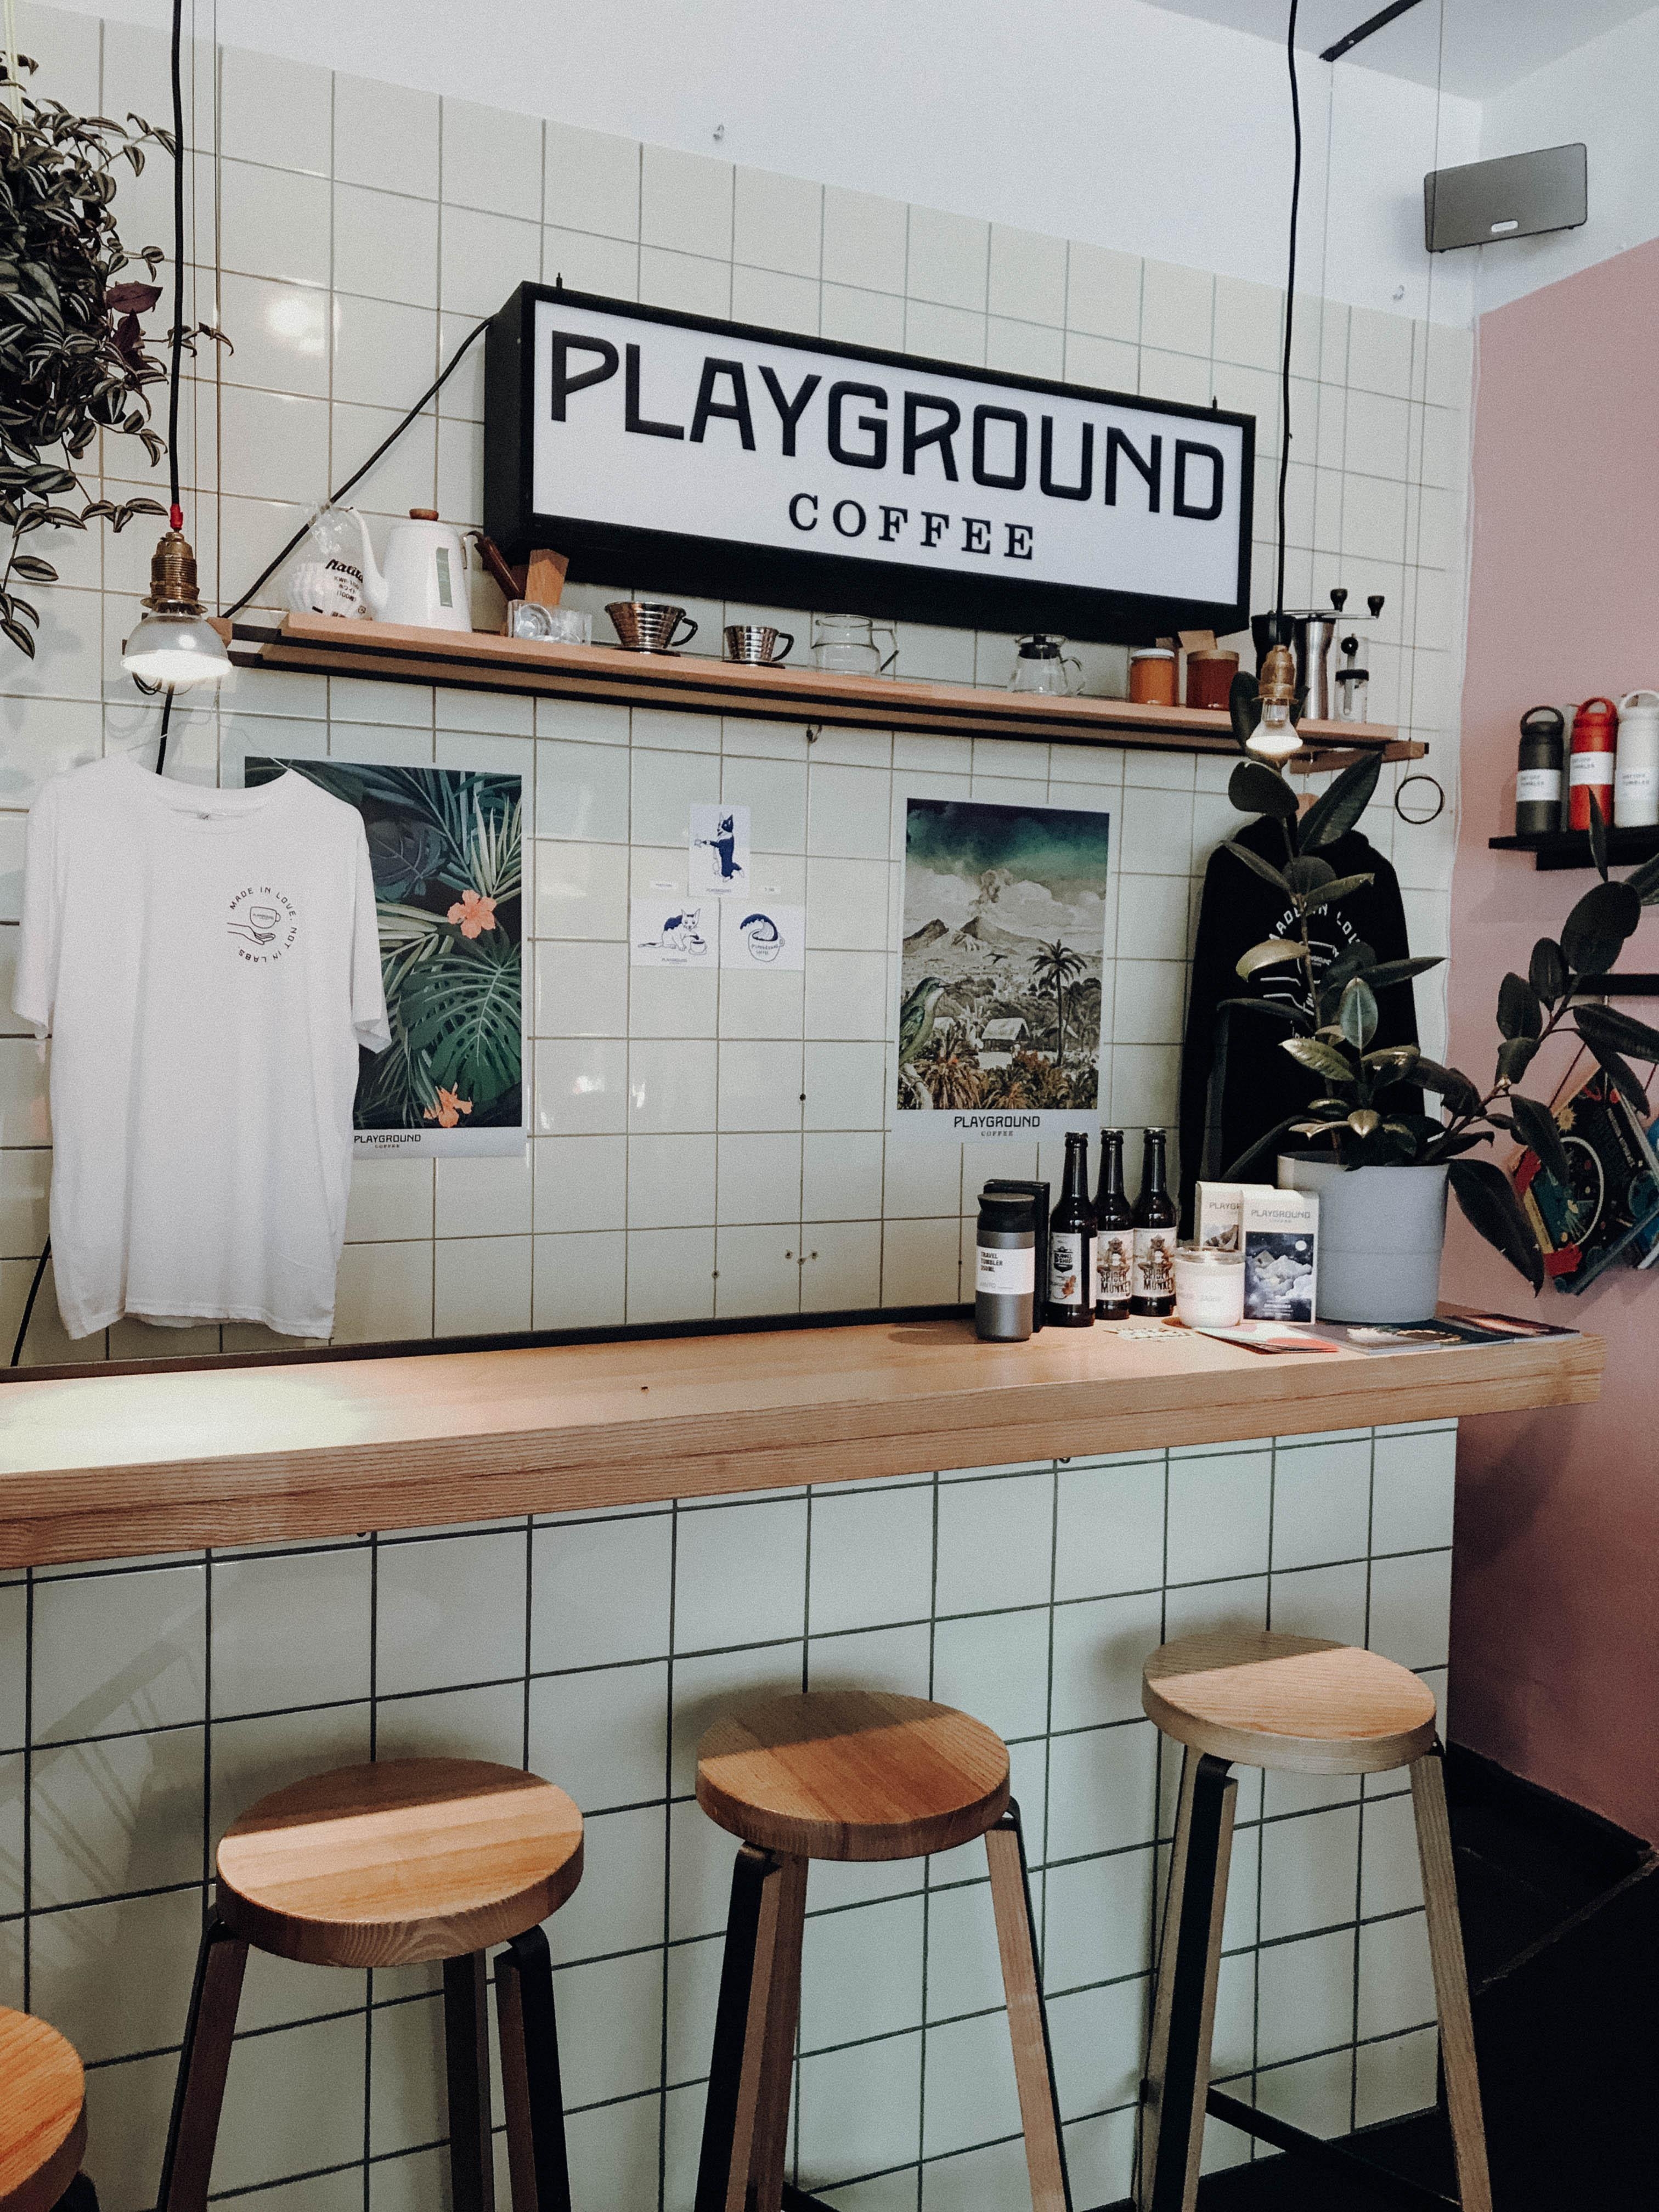 #coffeelover Tipp für #hamburg: Bei Playground Coffee gibt's leckersten Kaffee und schönstes Interior!